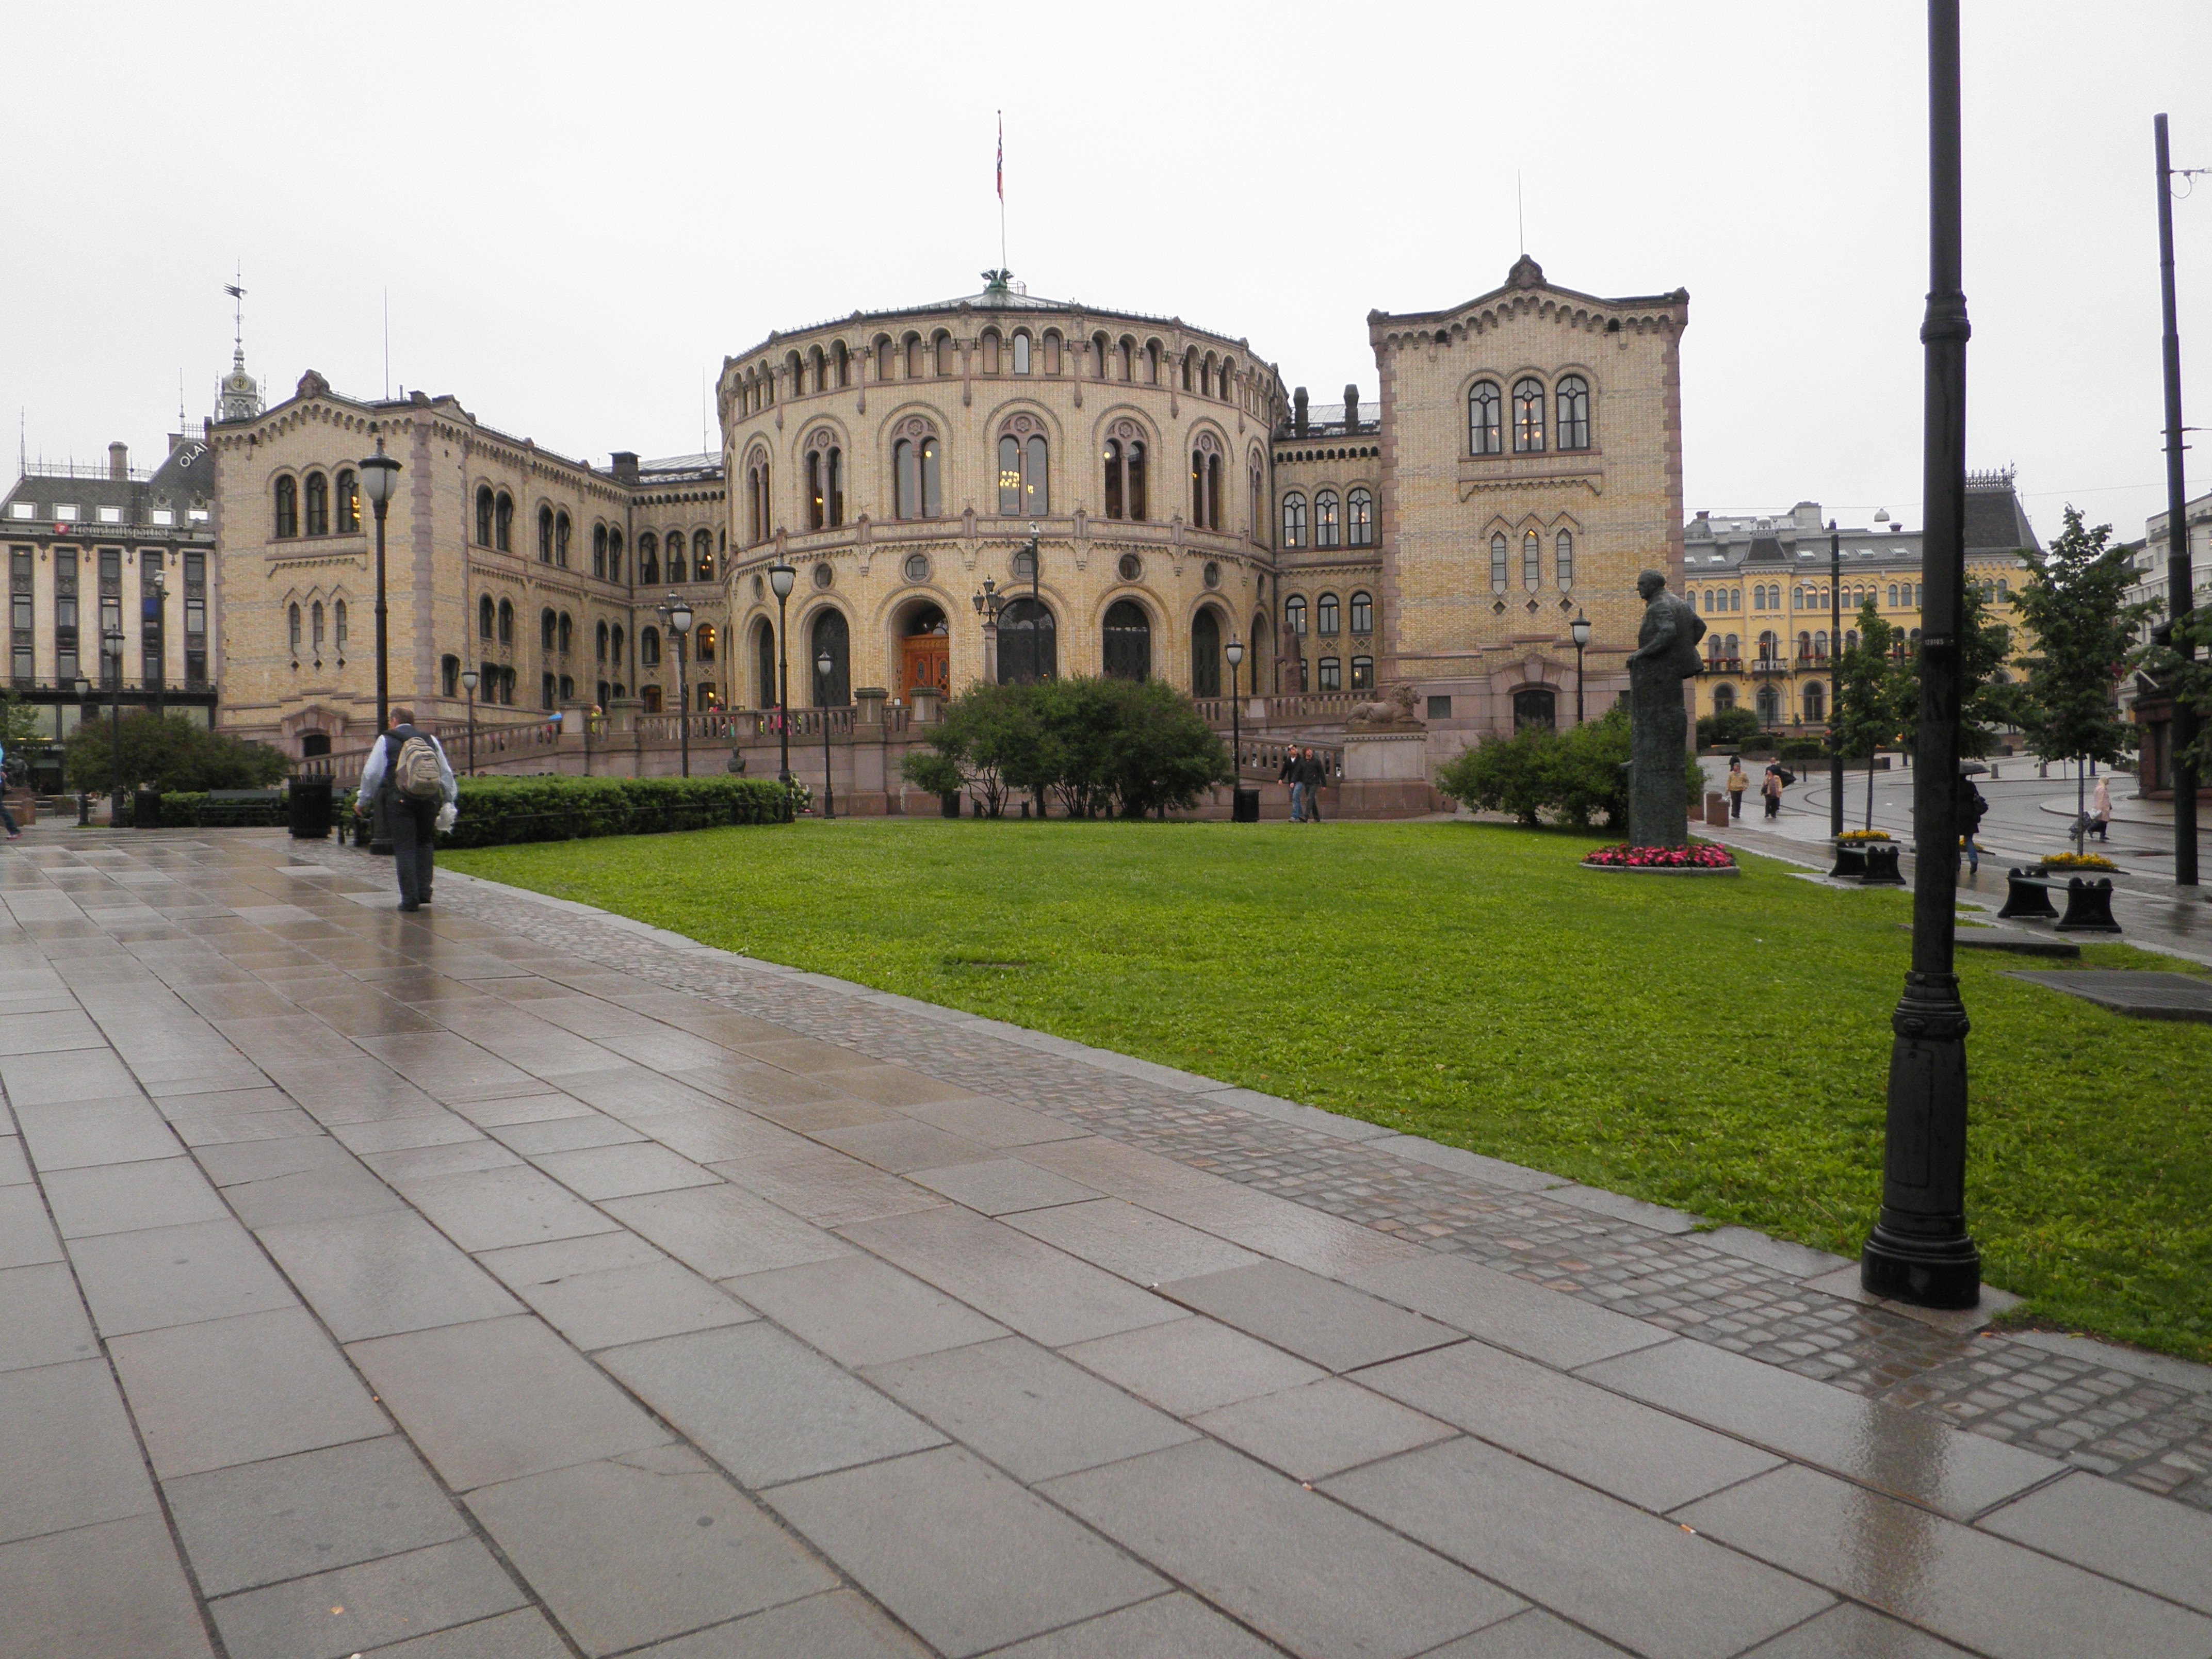 Some photos from Oslo seminar